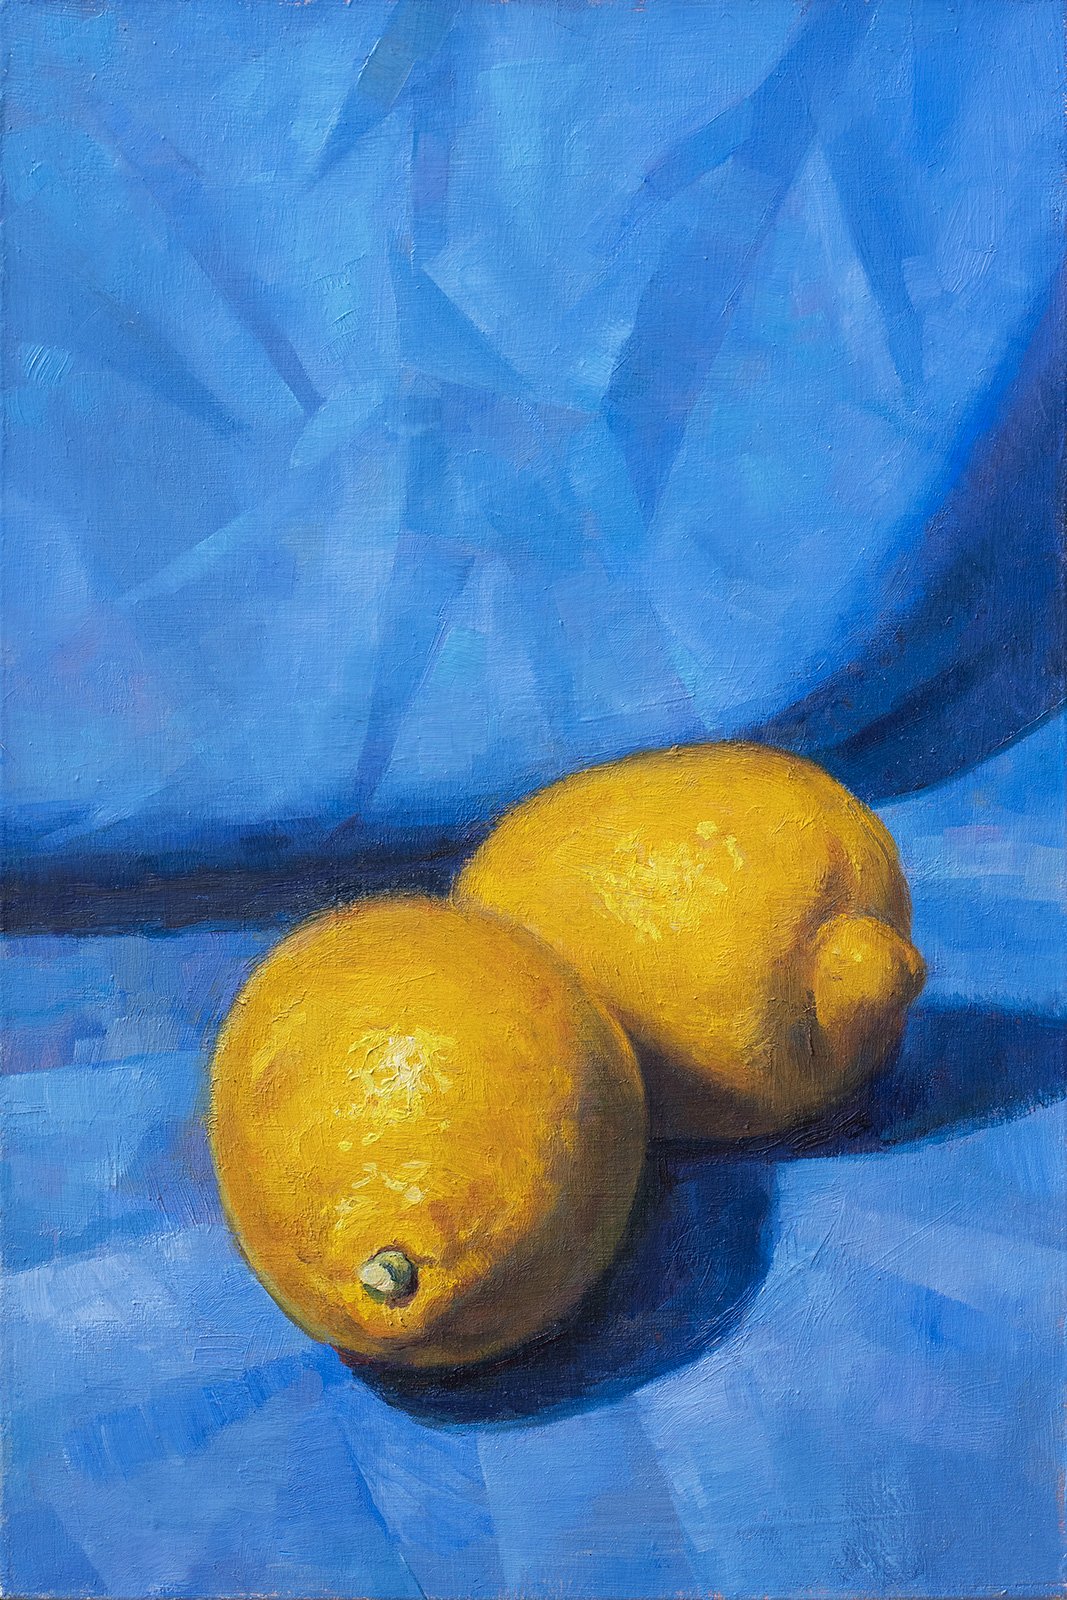 Two Lemons on Blue by T. Garrett Eaton